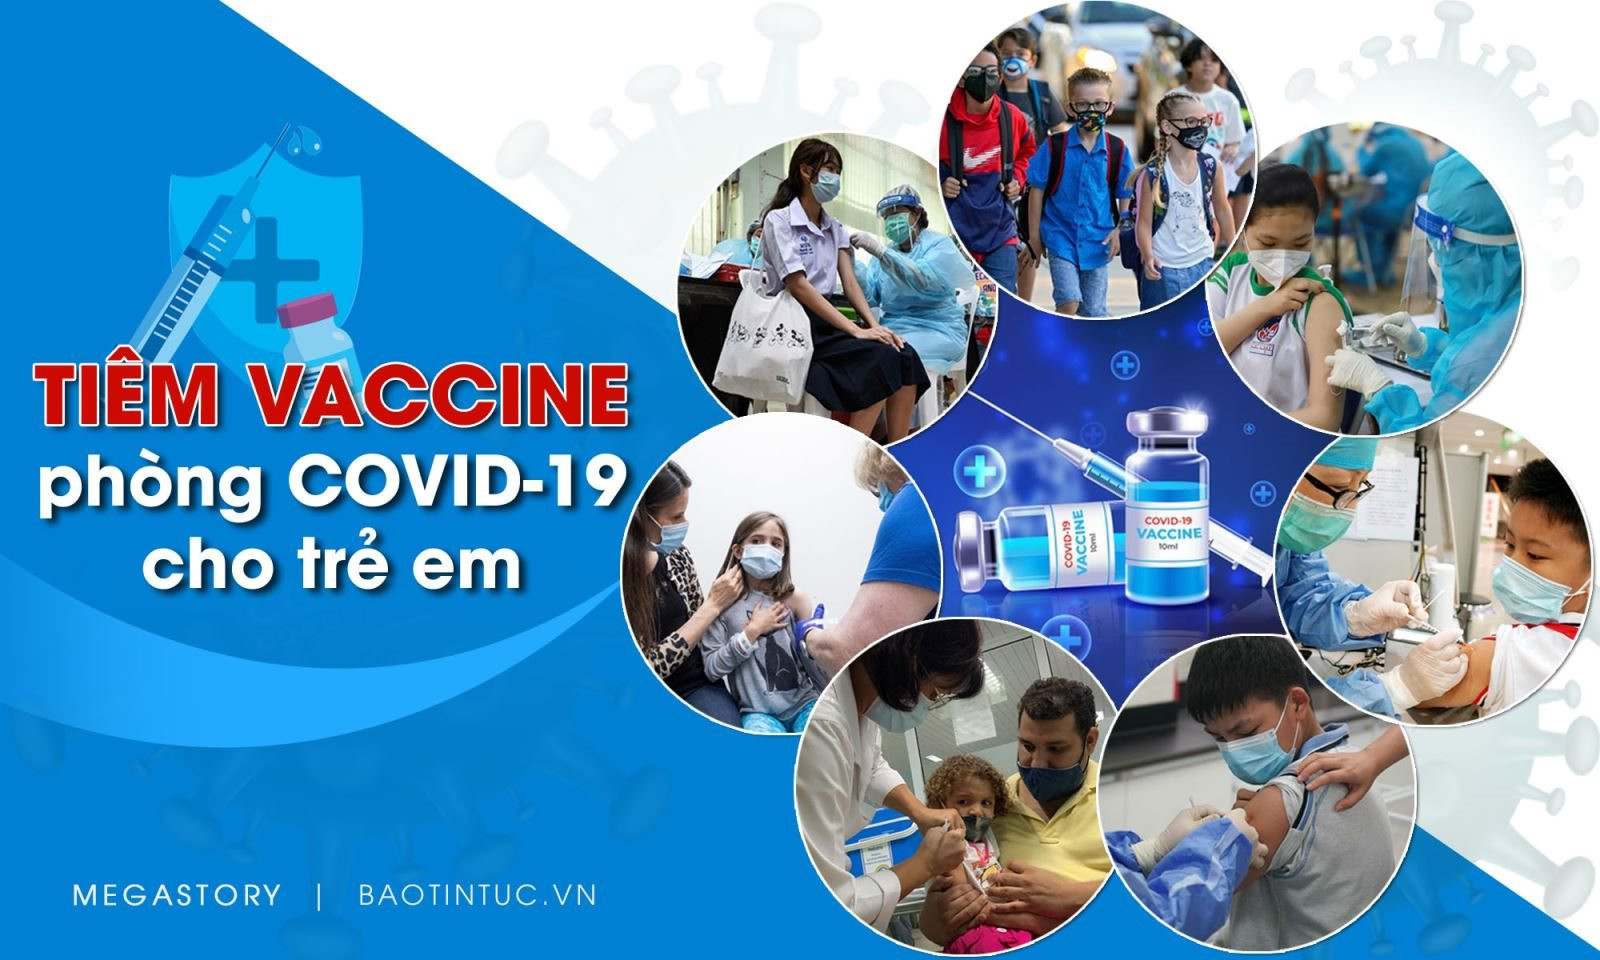 Tiêm vaccine phòng COVID-19 cho trẻ em